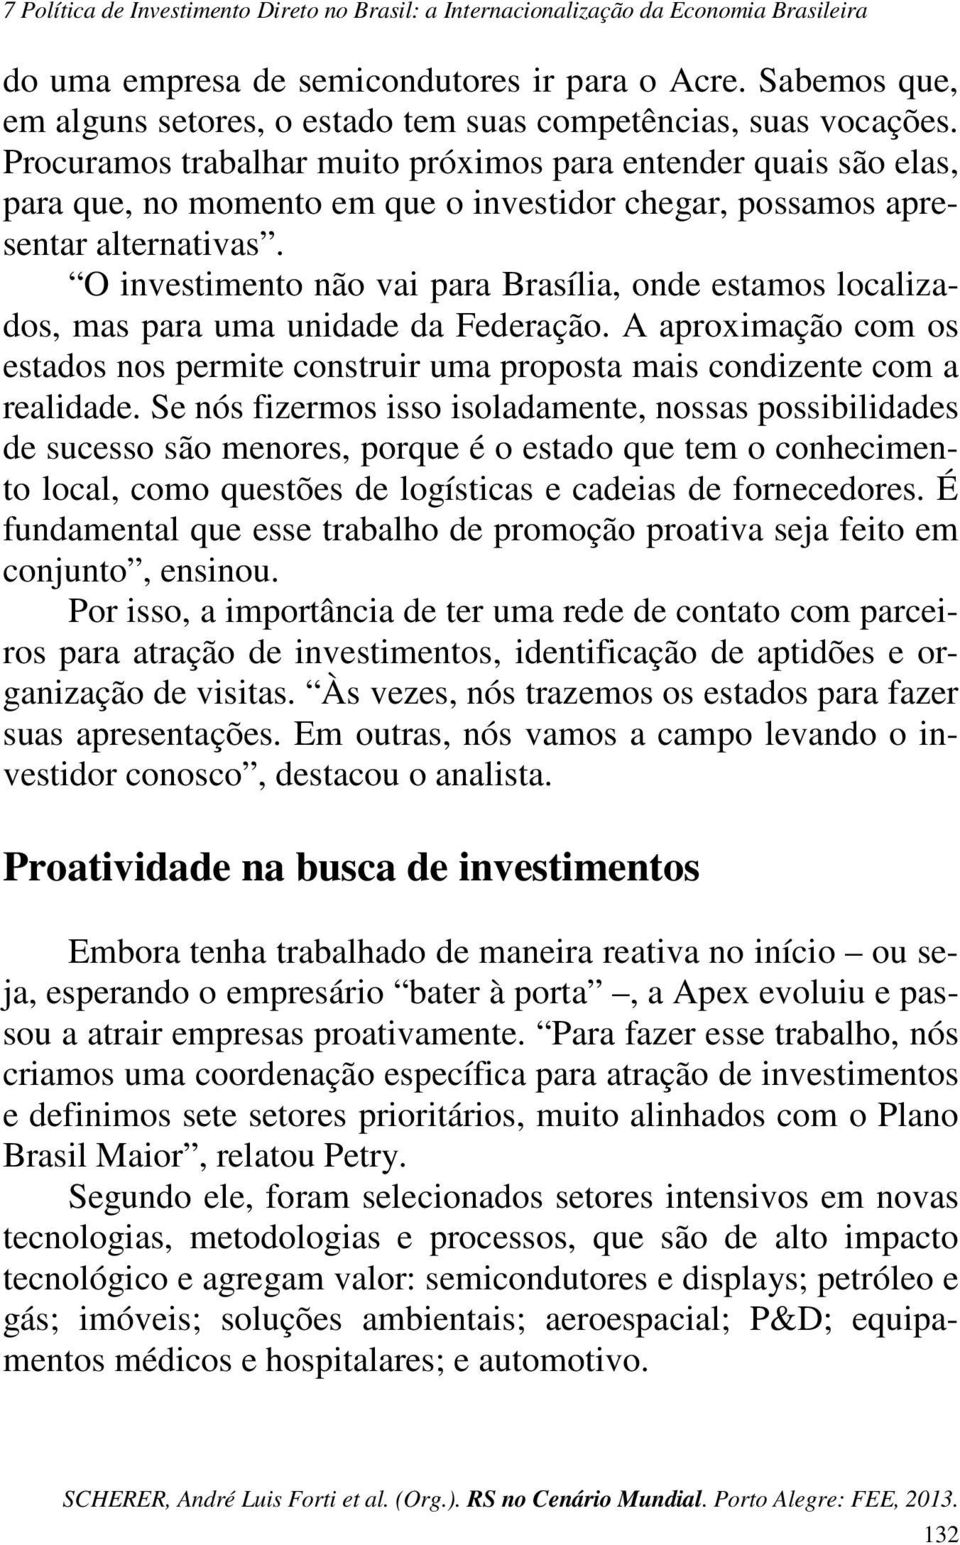 O investimento não vai para Brasília, onde estamos localizados, mas para uma unidade da Federação. A aproximação com os estados nos permite construir uma proposta mais condizente com a realidade.